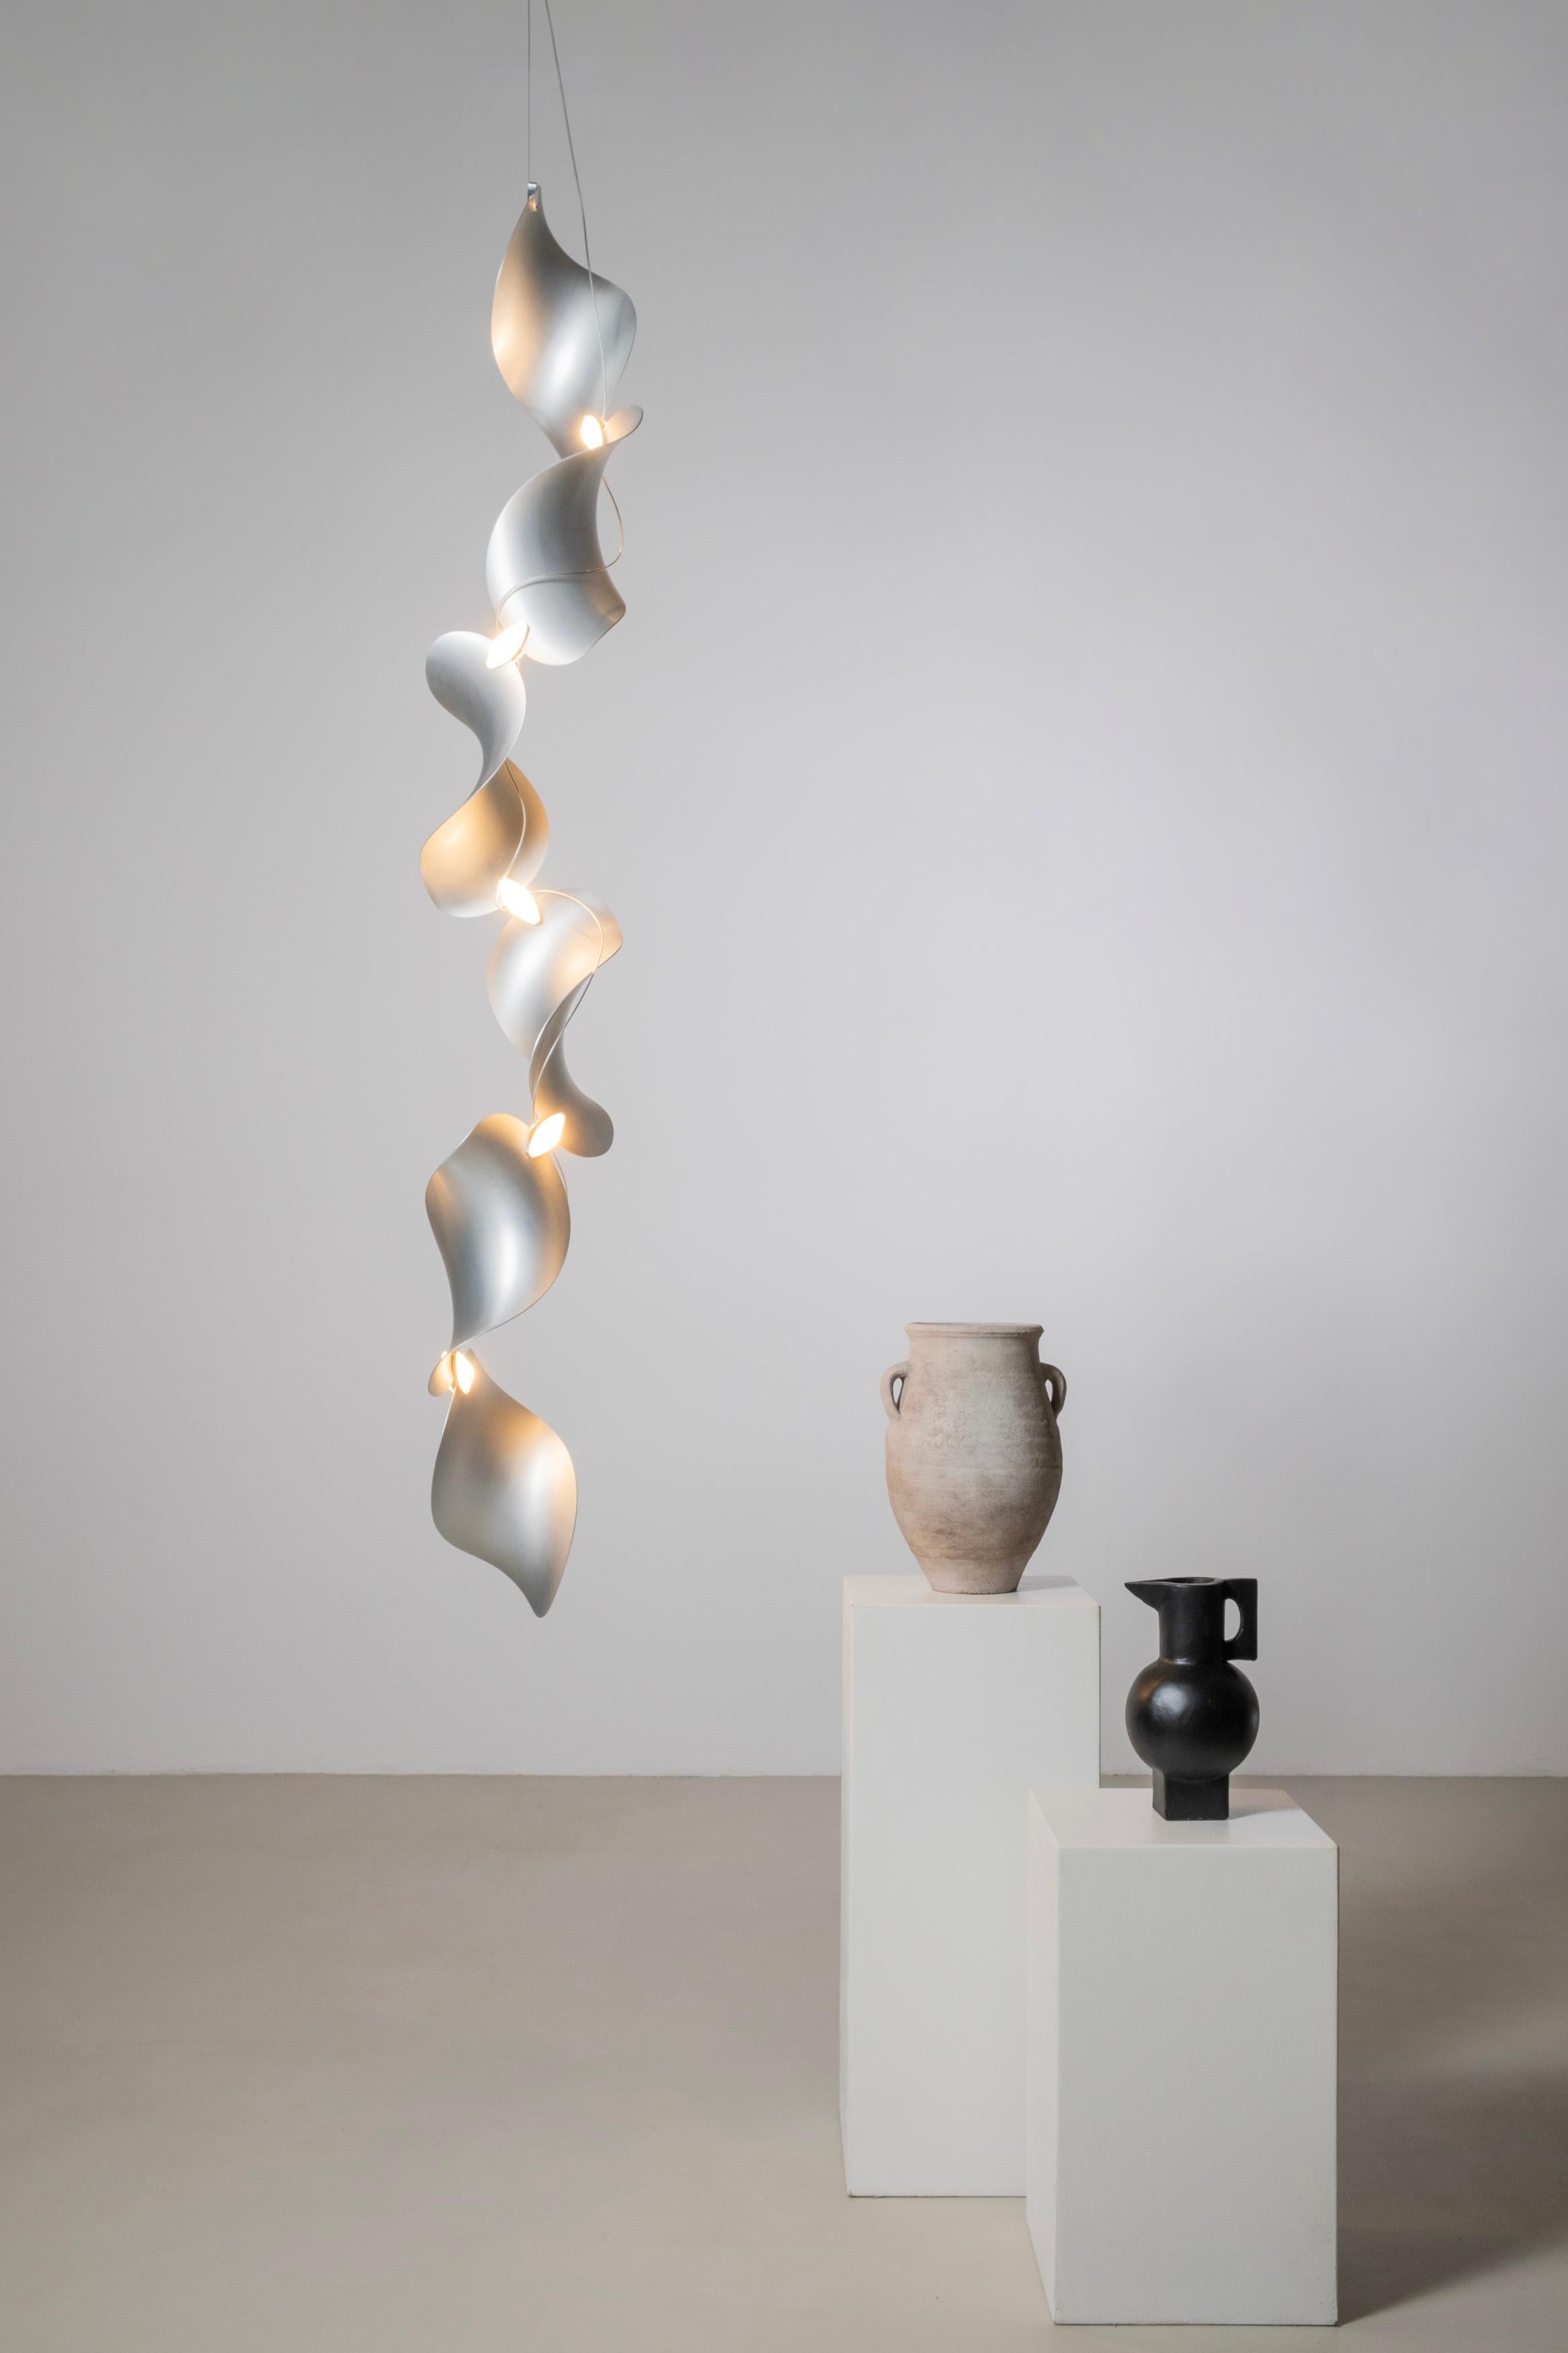 Lampe à suspension Dune 6V de Daniel Becker en aluminium anodisé pour objets mousse

Conçue par l'artiste berlinois Daniel Becker, la collection 